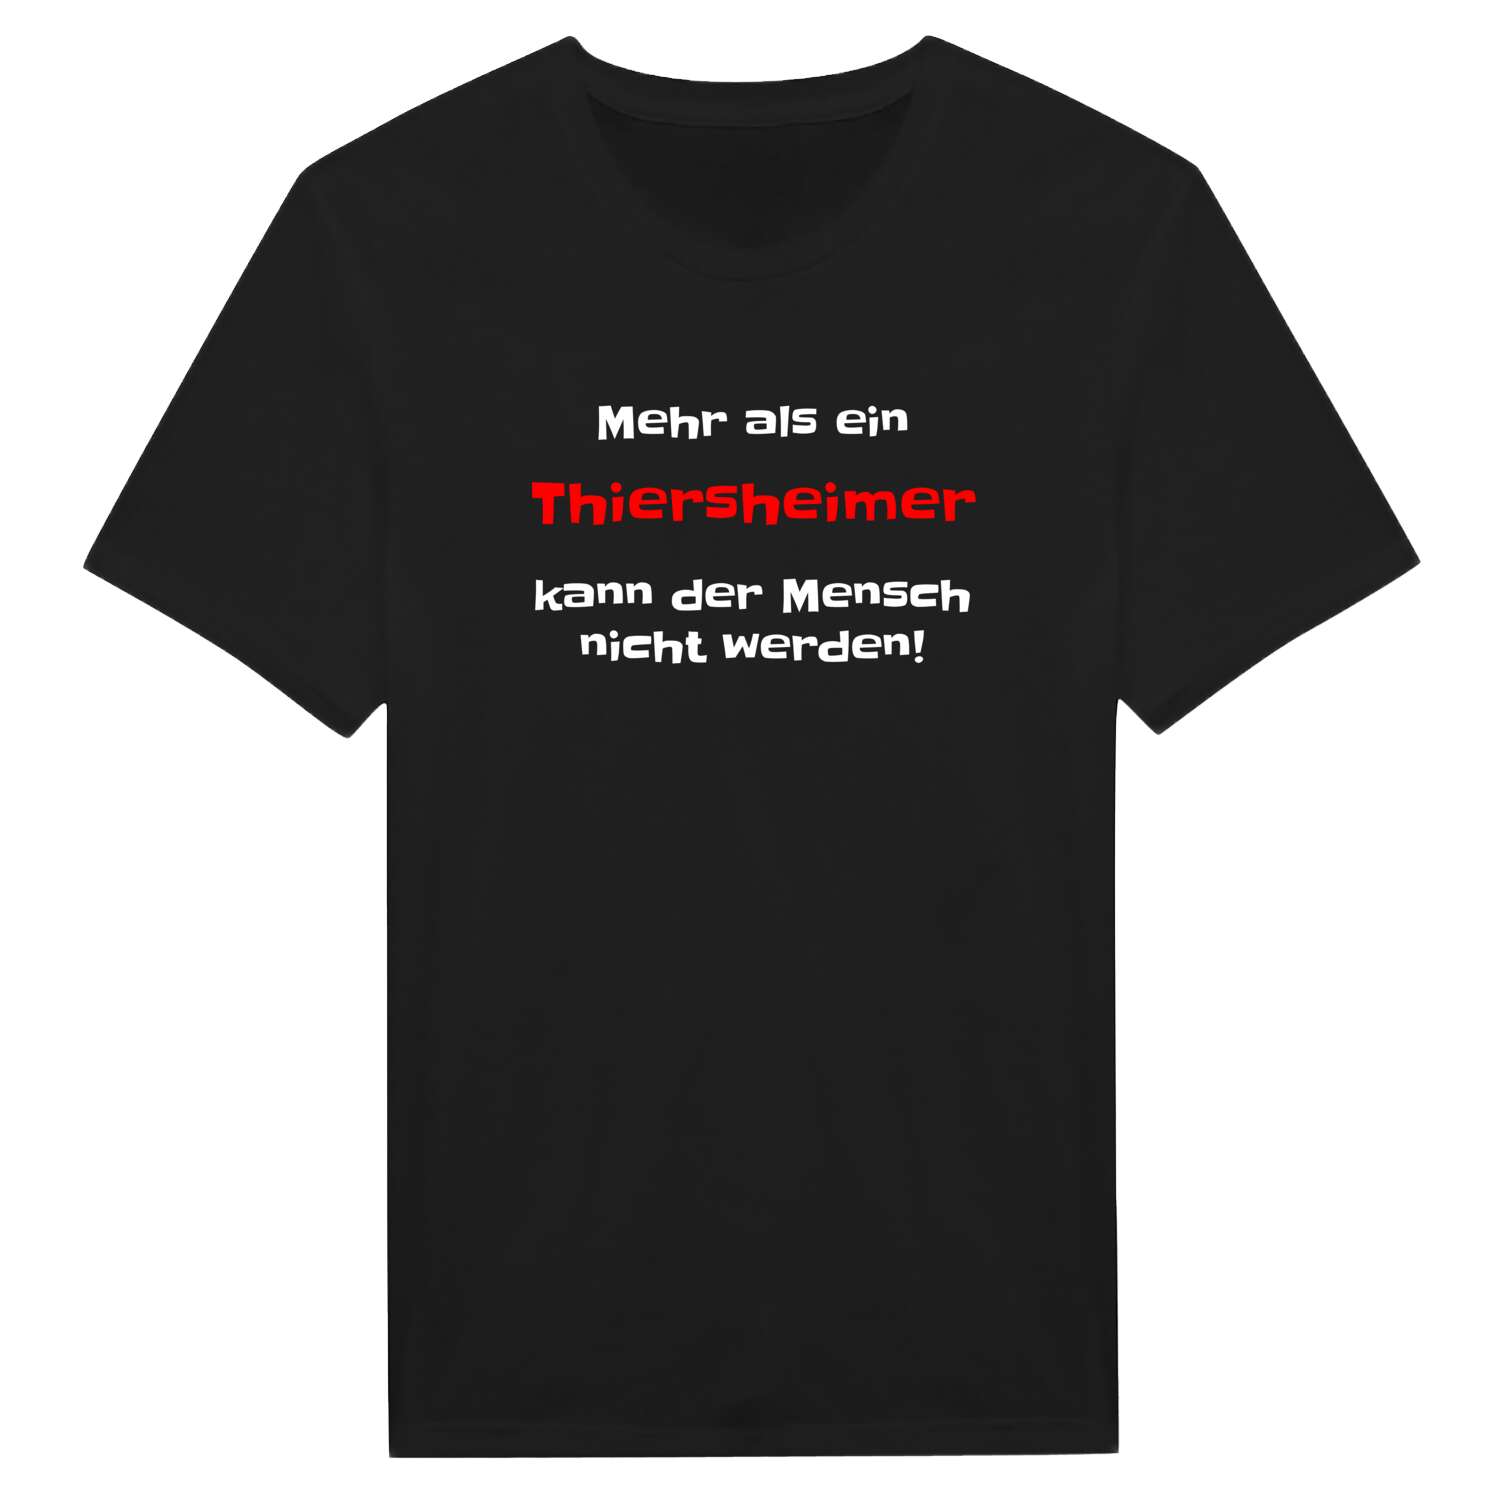 Thiersheim T-Shirt »Mehr als ein«